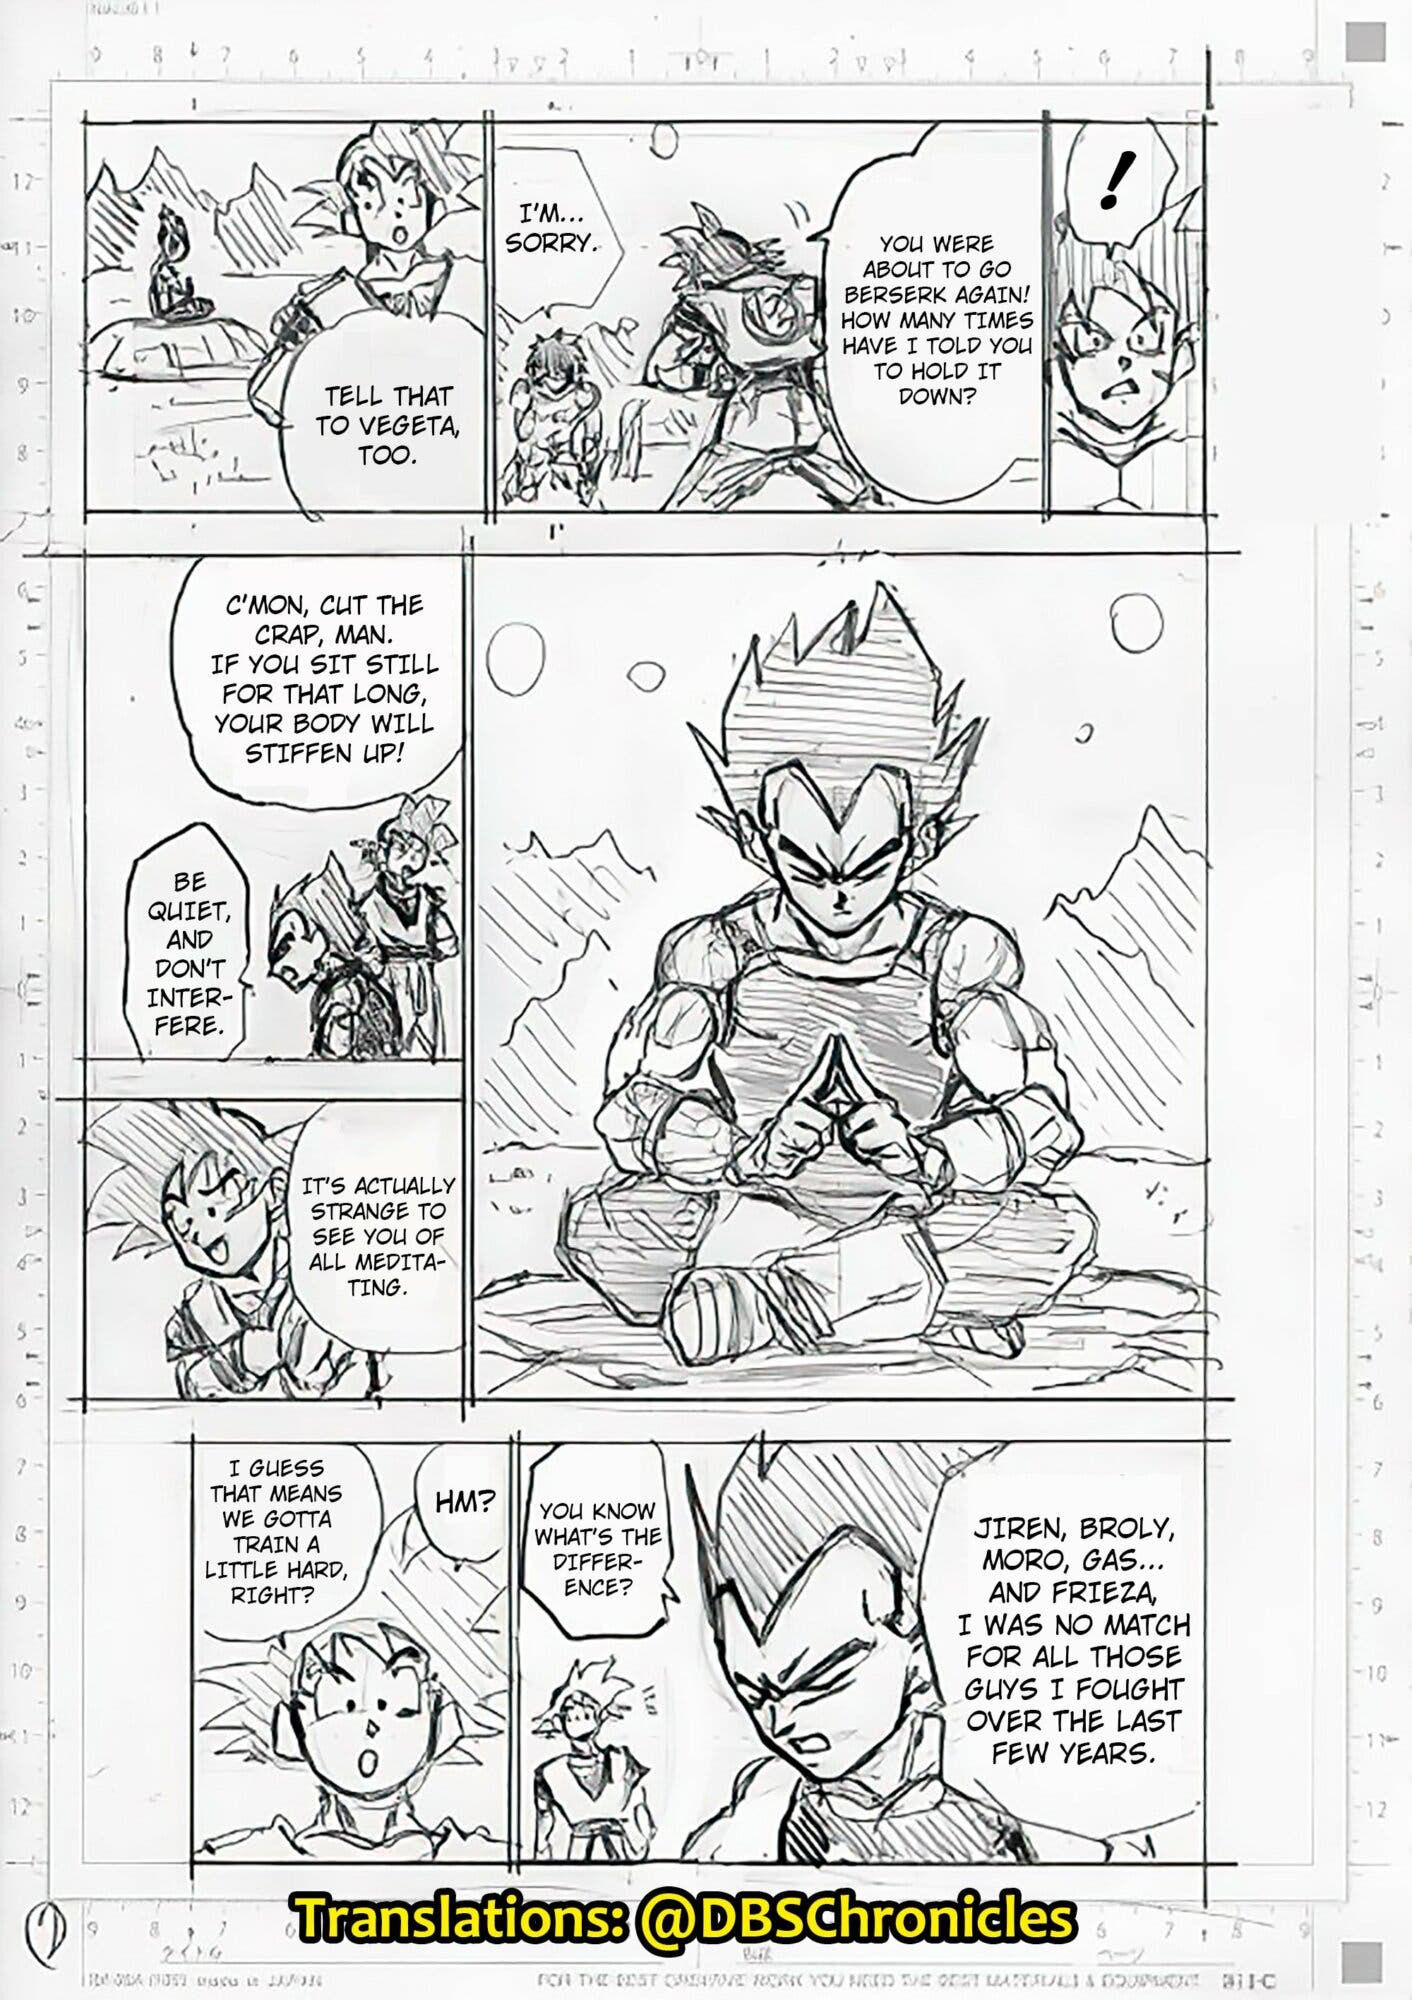 Daiko O Saiyajin on X: Rascunho do capítulo 93 do mangá de Dragon Ball  Super! Parece que teremos a continuação da luta entre Broly e Goku, algo  que não foi mostrado no